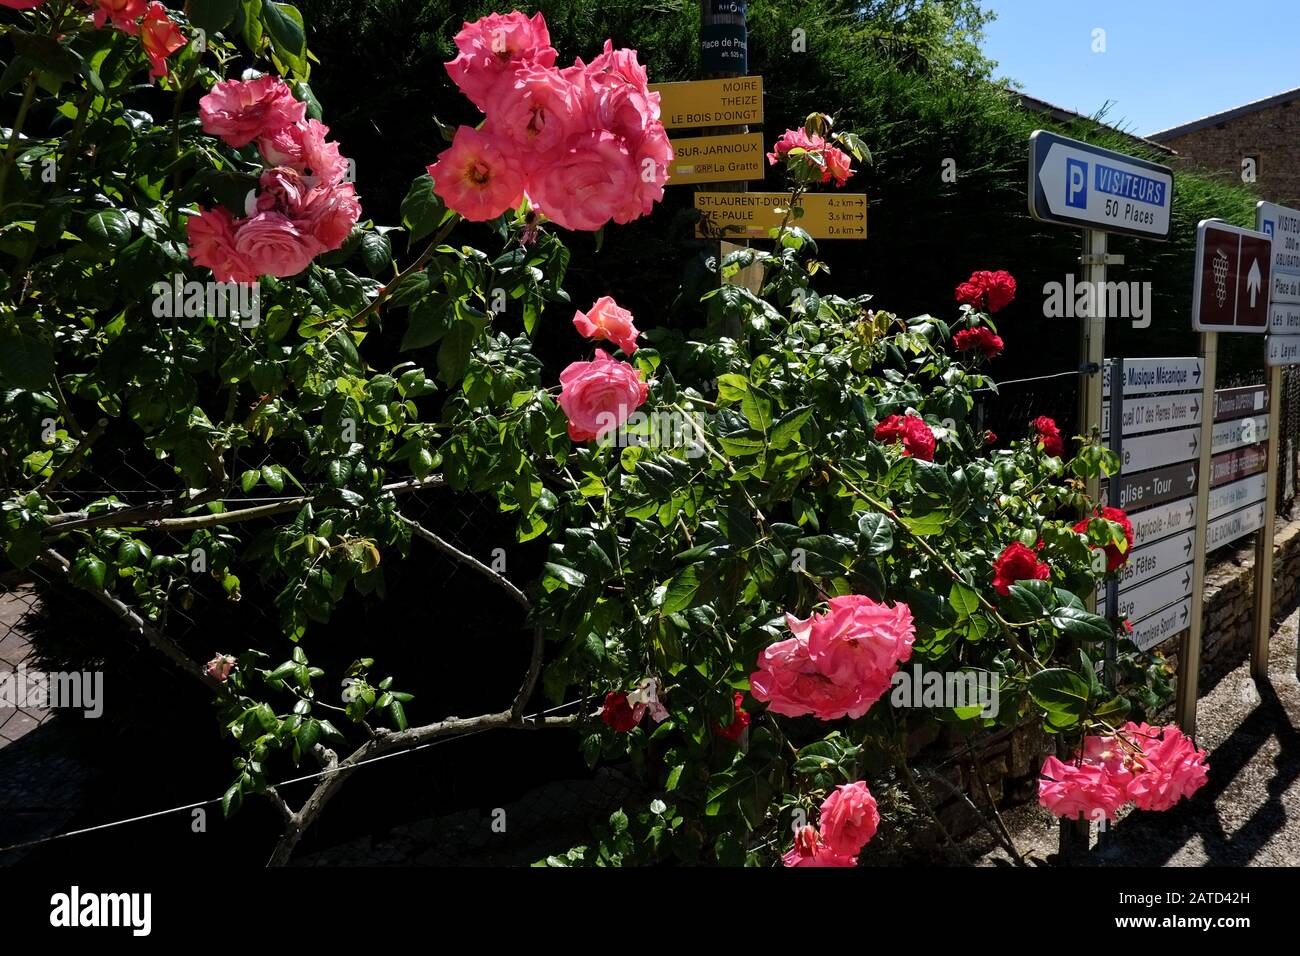 Un trellis pieno di rosa fioriture vecchio stile accanto ad una cacofonia di nomi di luogo e indicazioni stradali sul bordo di Oingt, Val d'Oingt, Francia Foto Stock